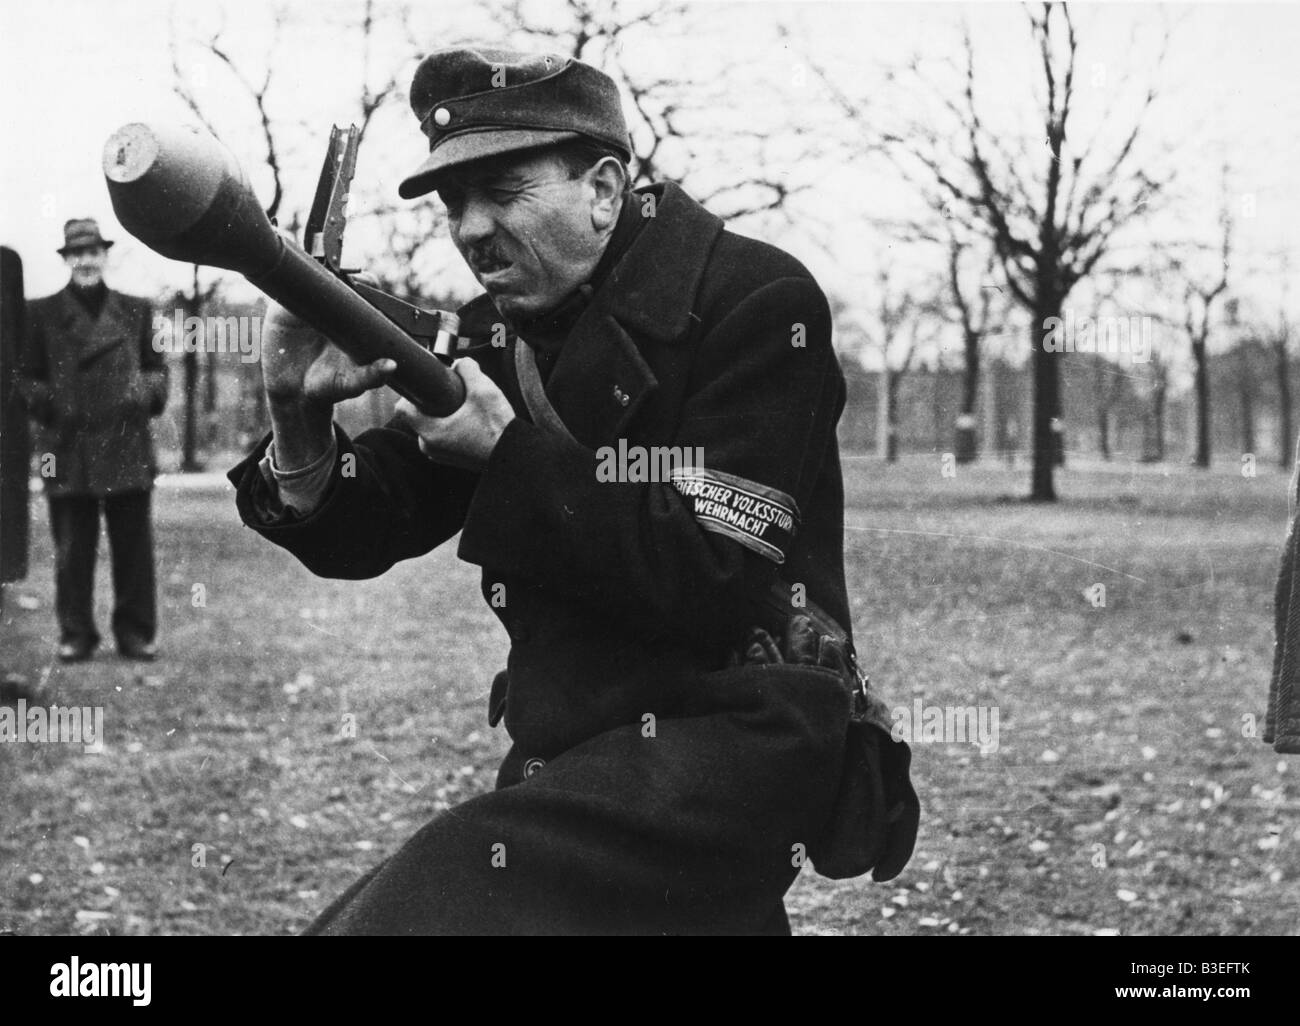 Bazooka training / Berlin / 1945 Stock Photo